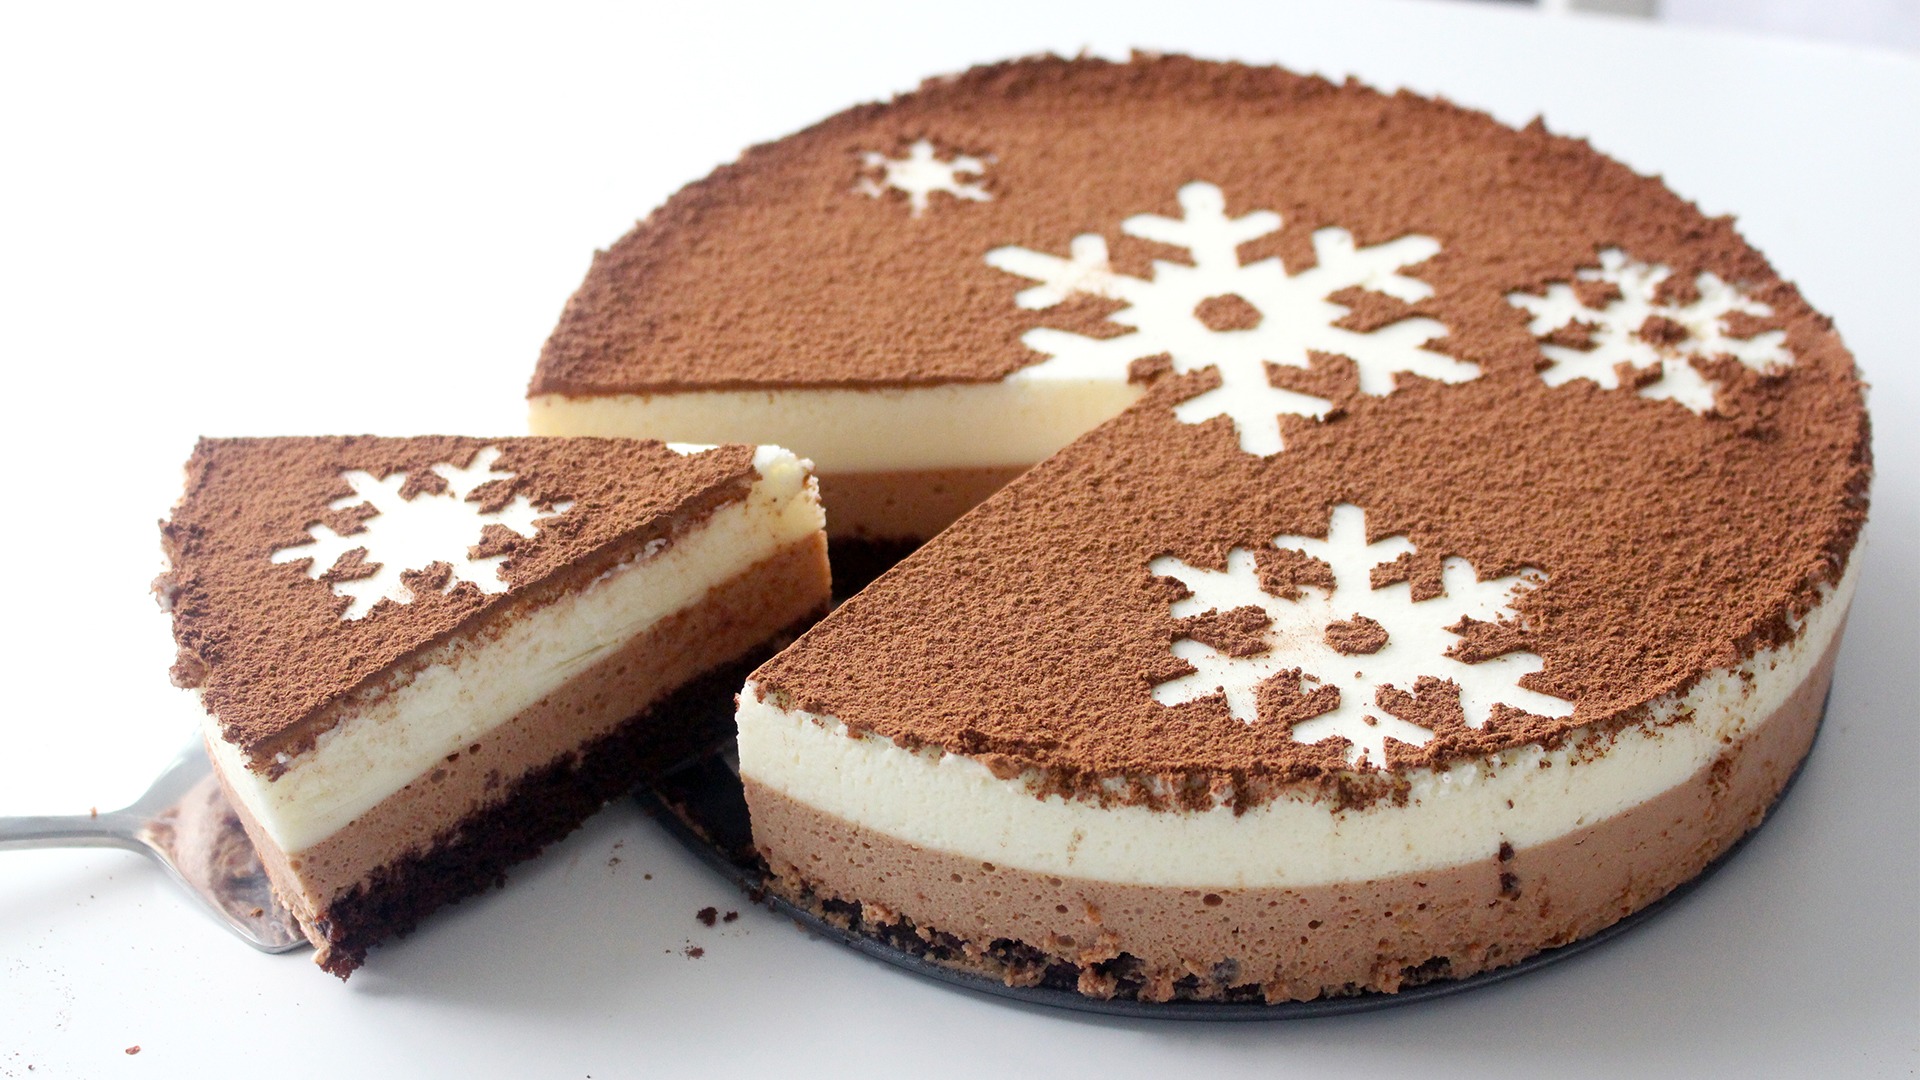 How to Make a Chocolate Snowflake Cake